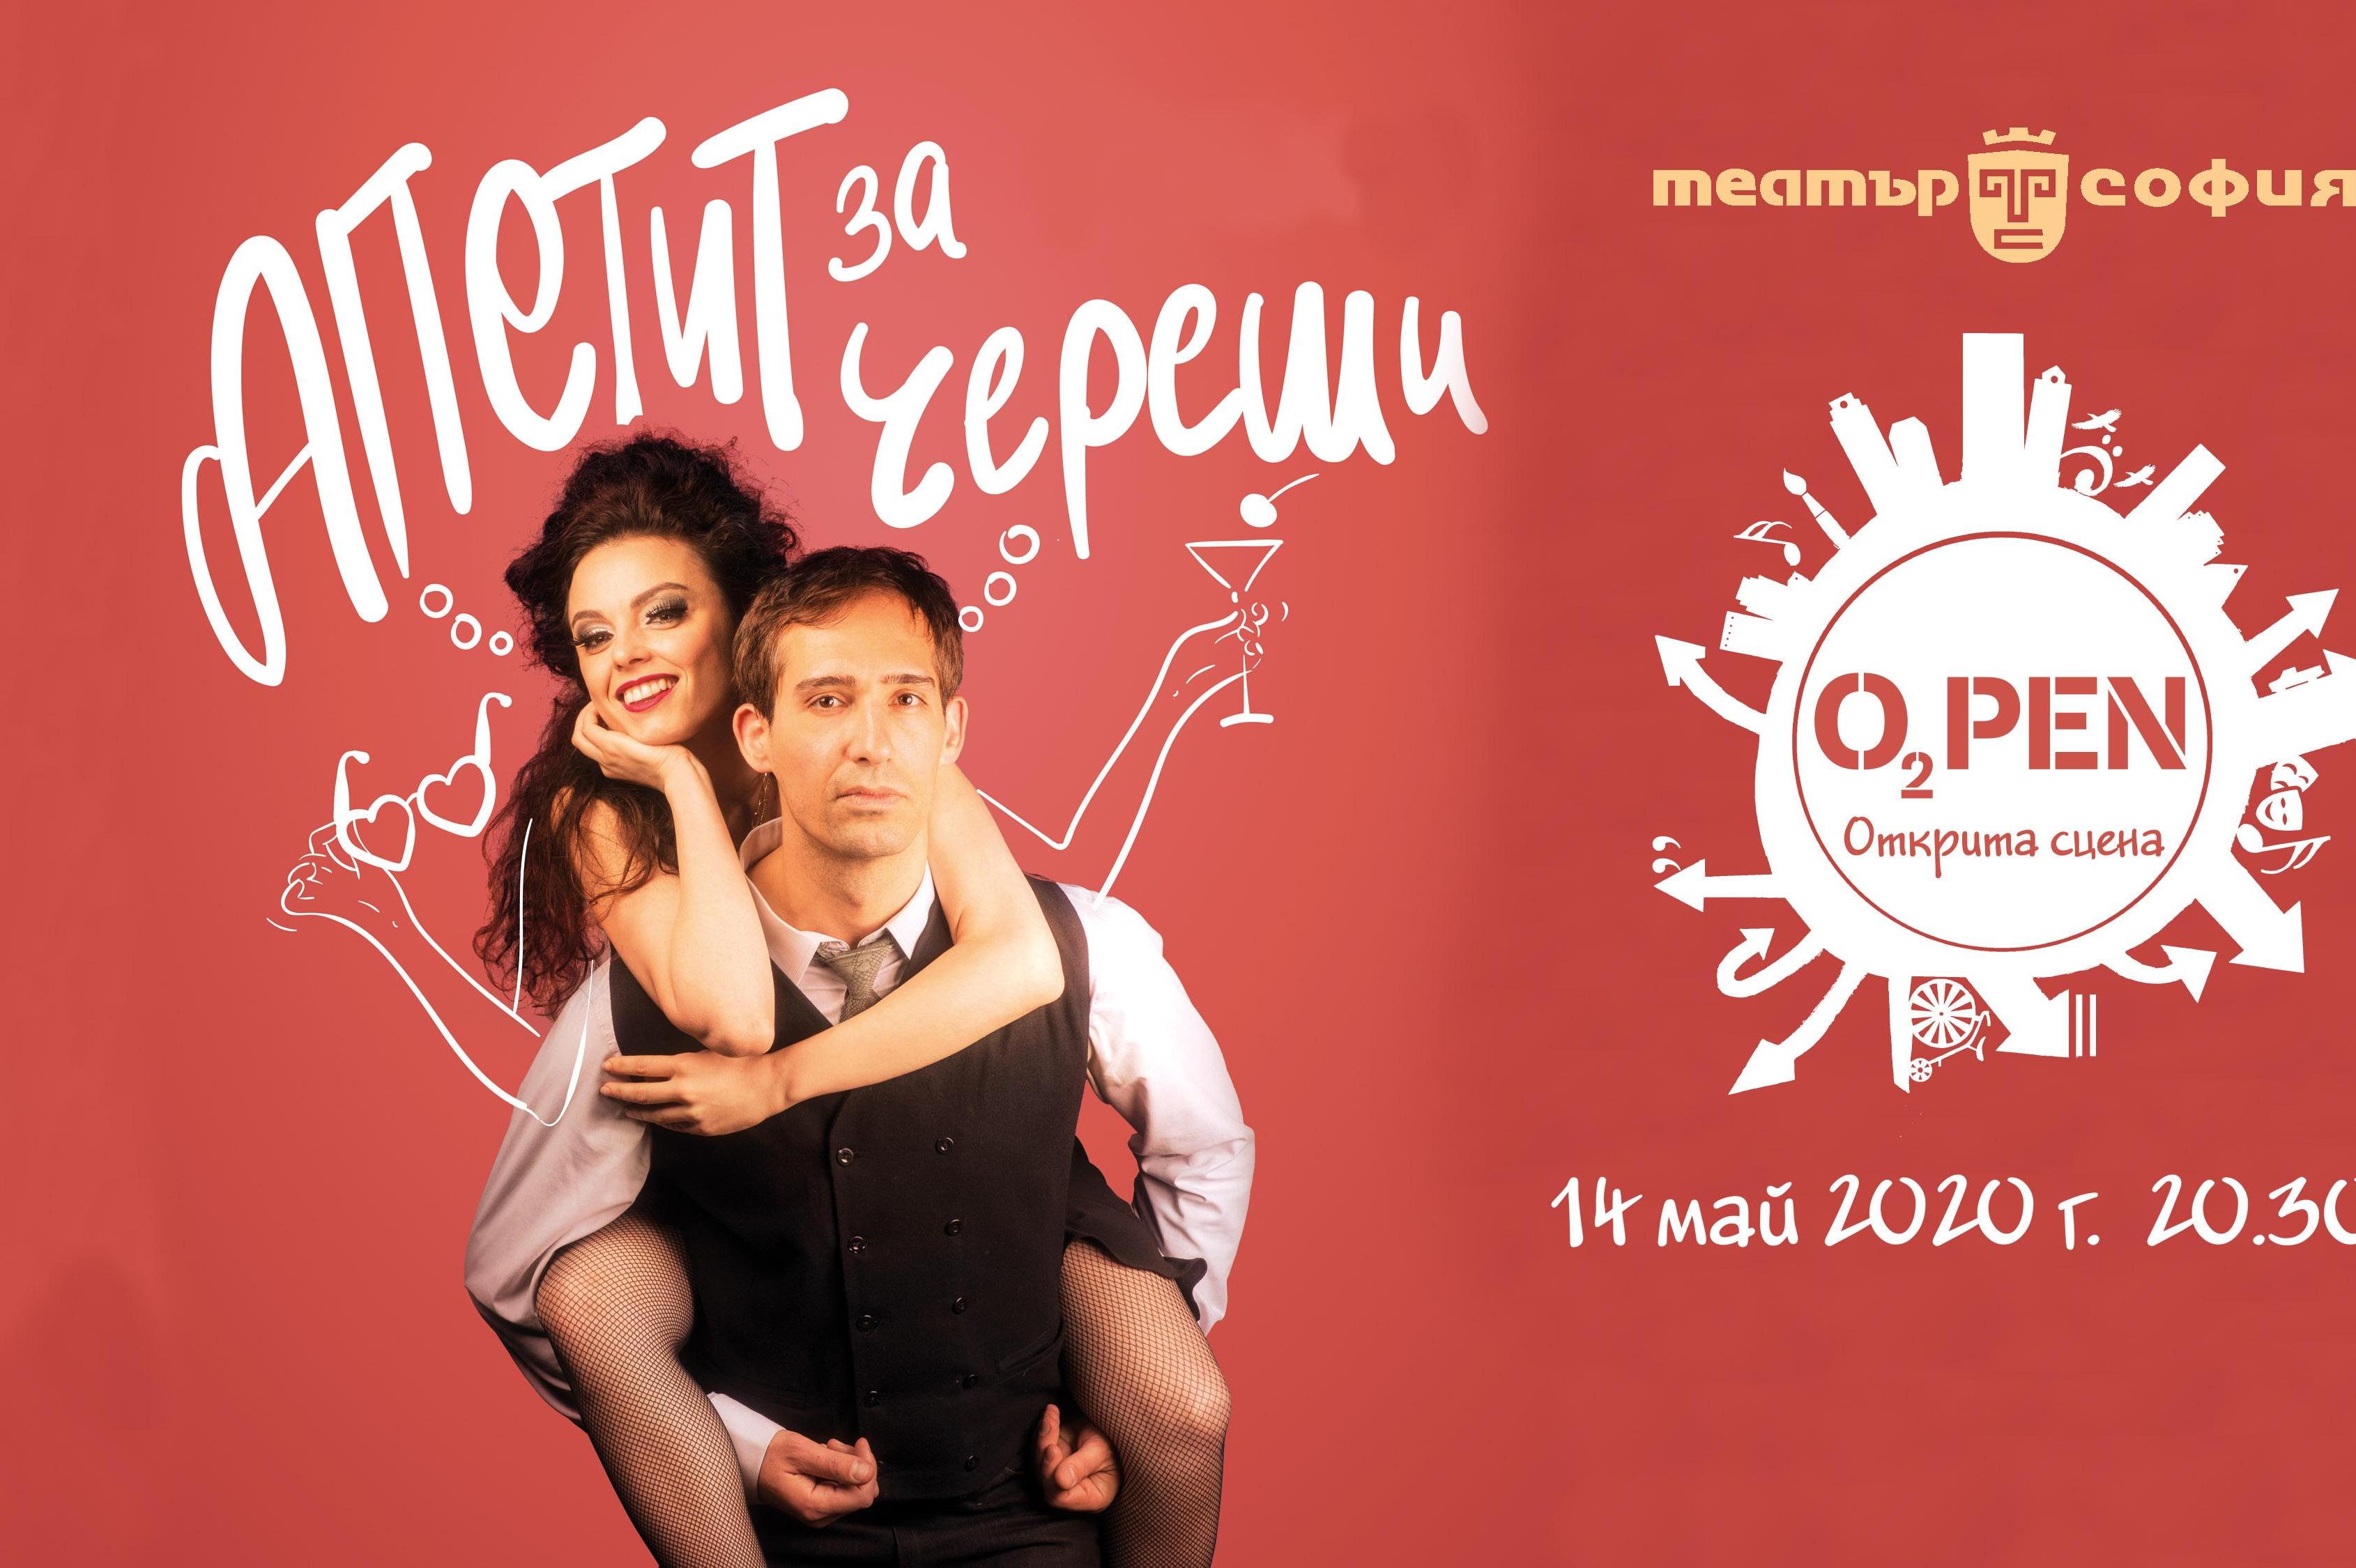 Театър "София" стартира програма на открито с "Апетит за череши"